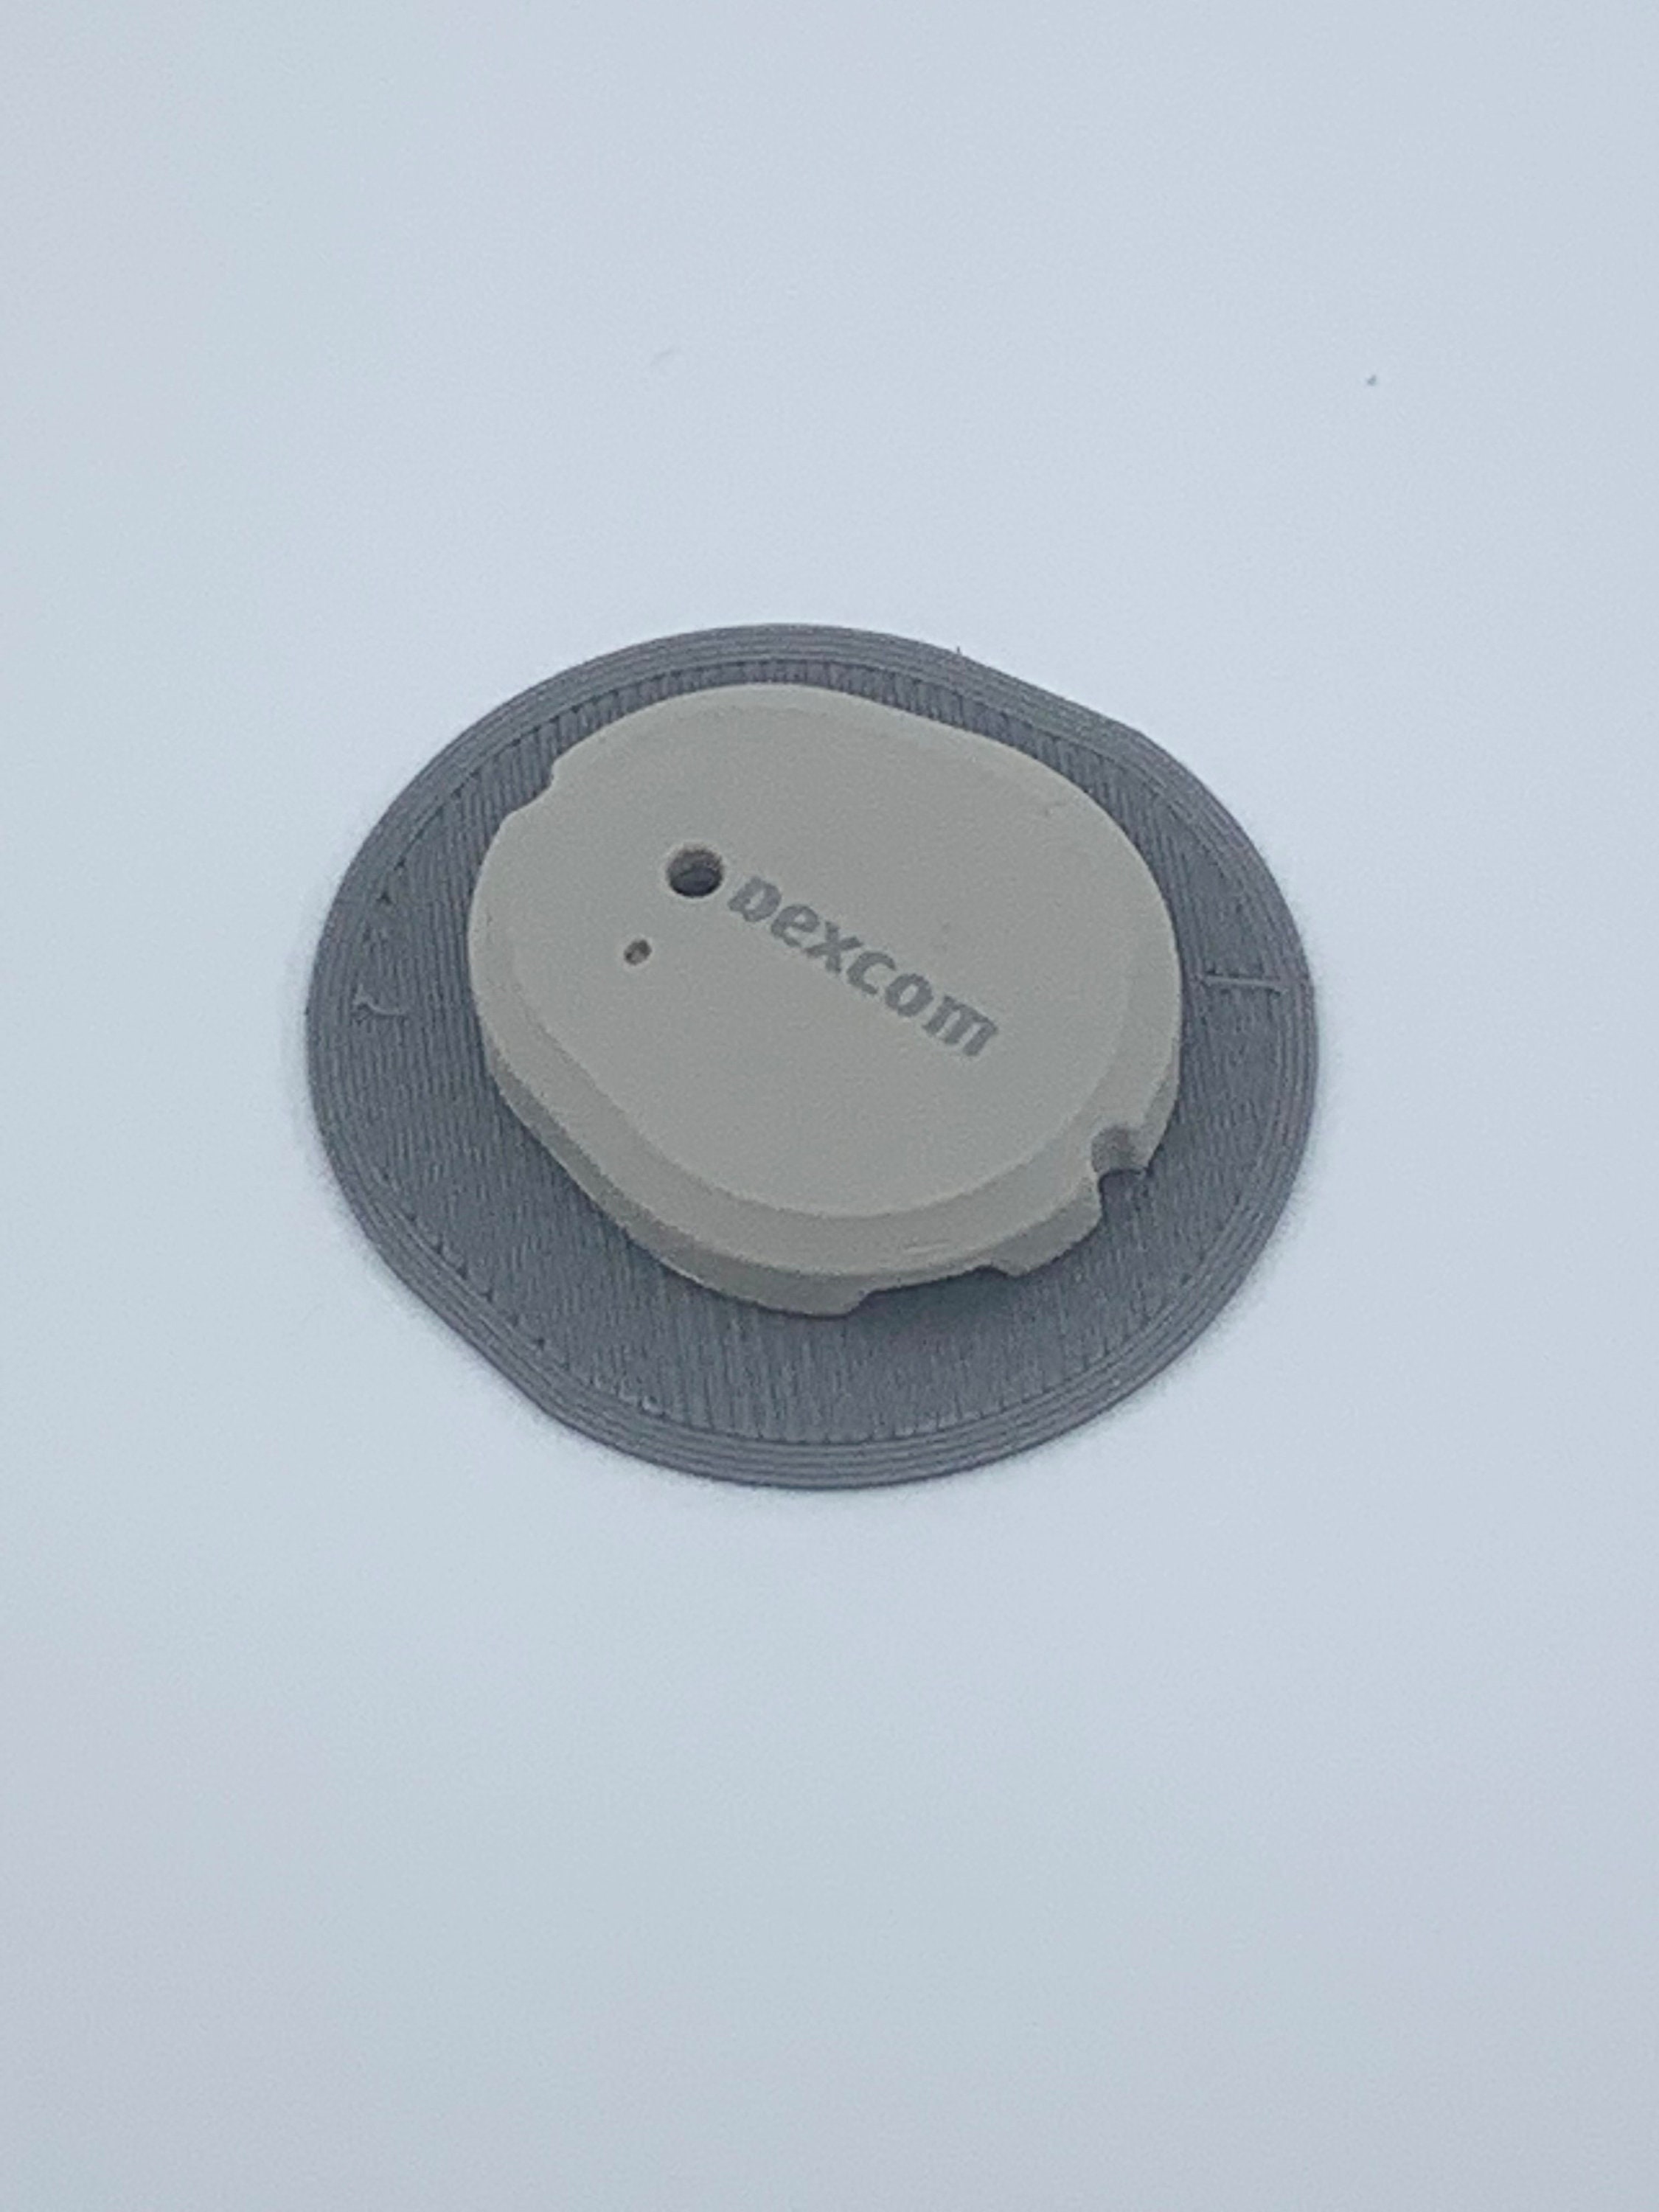 Flexiarmor Sensitive Underlay for Dexcom G6 Reusable 